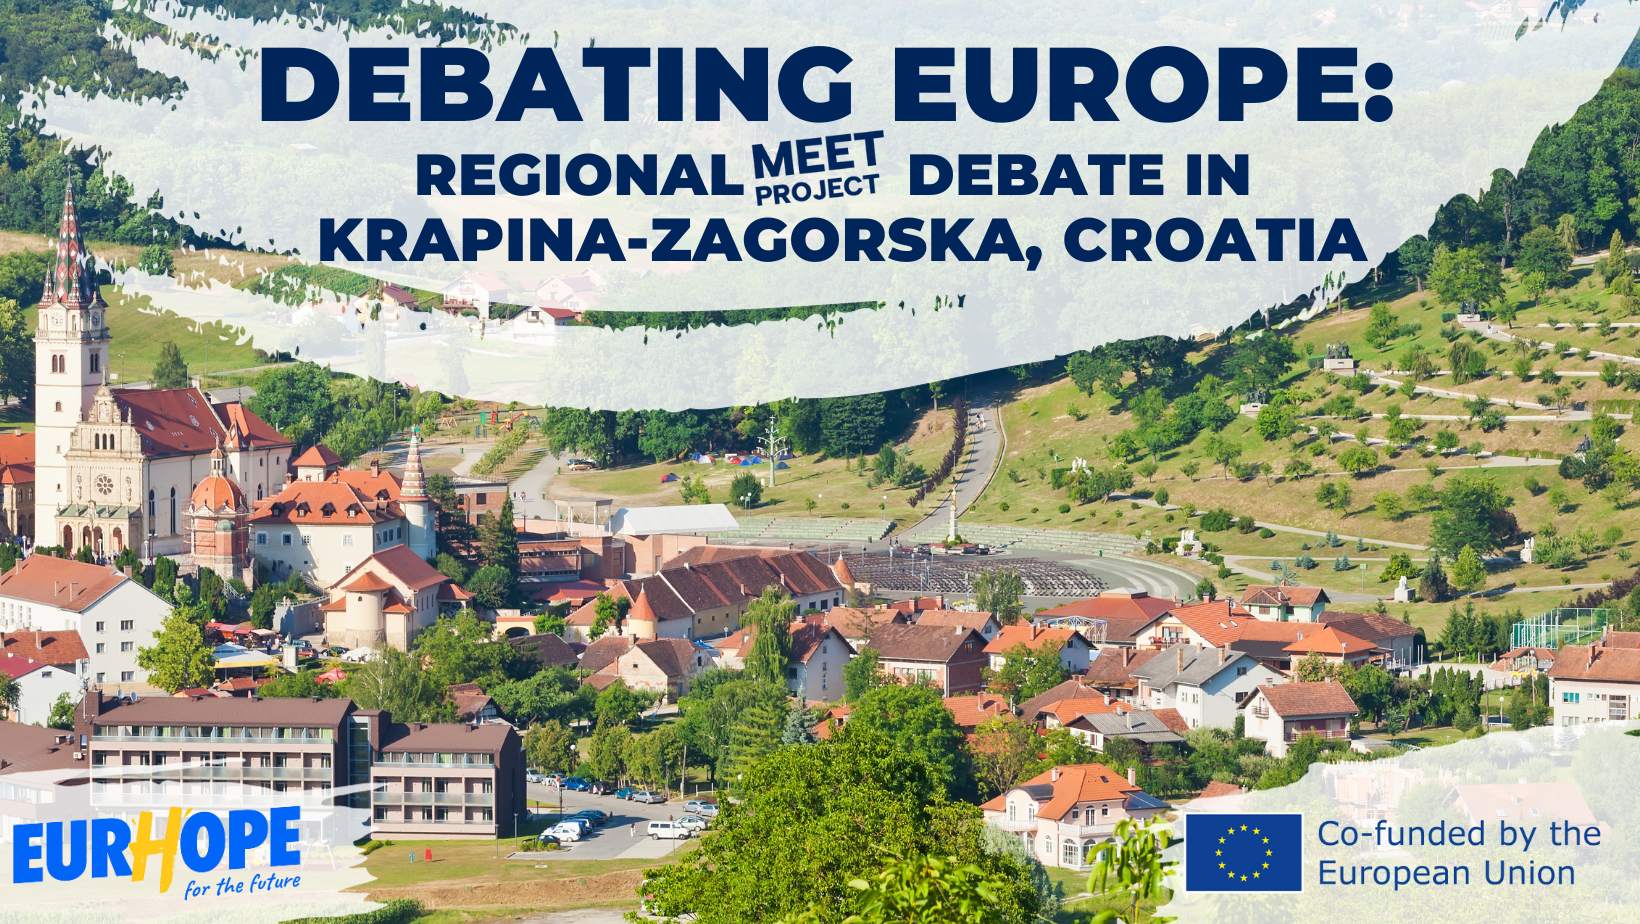 MEET debate in Croatia